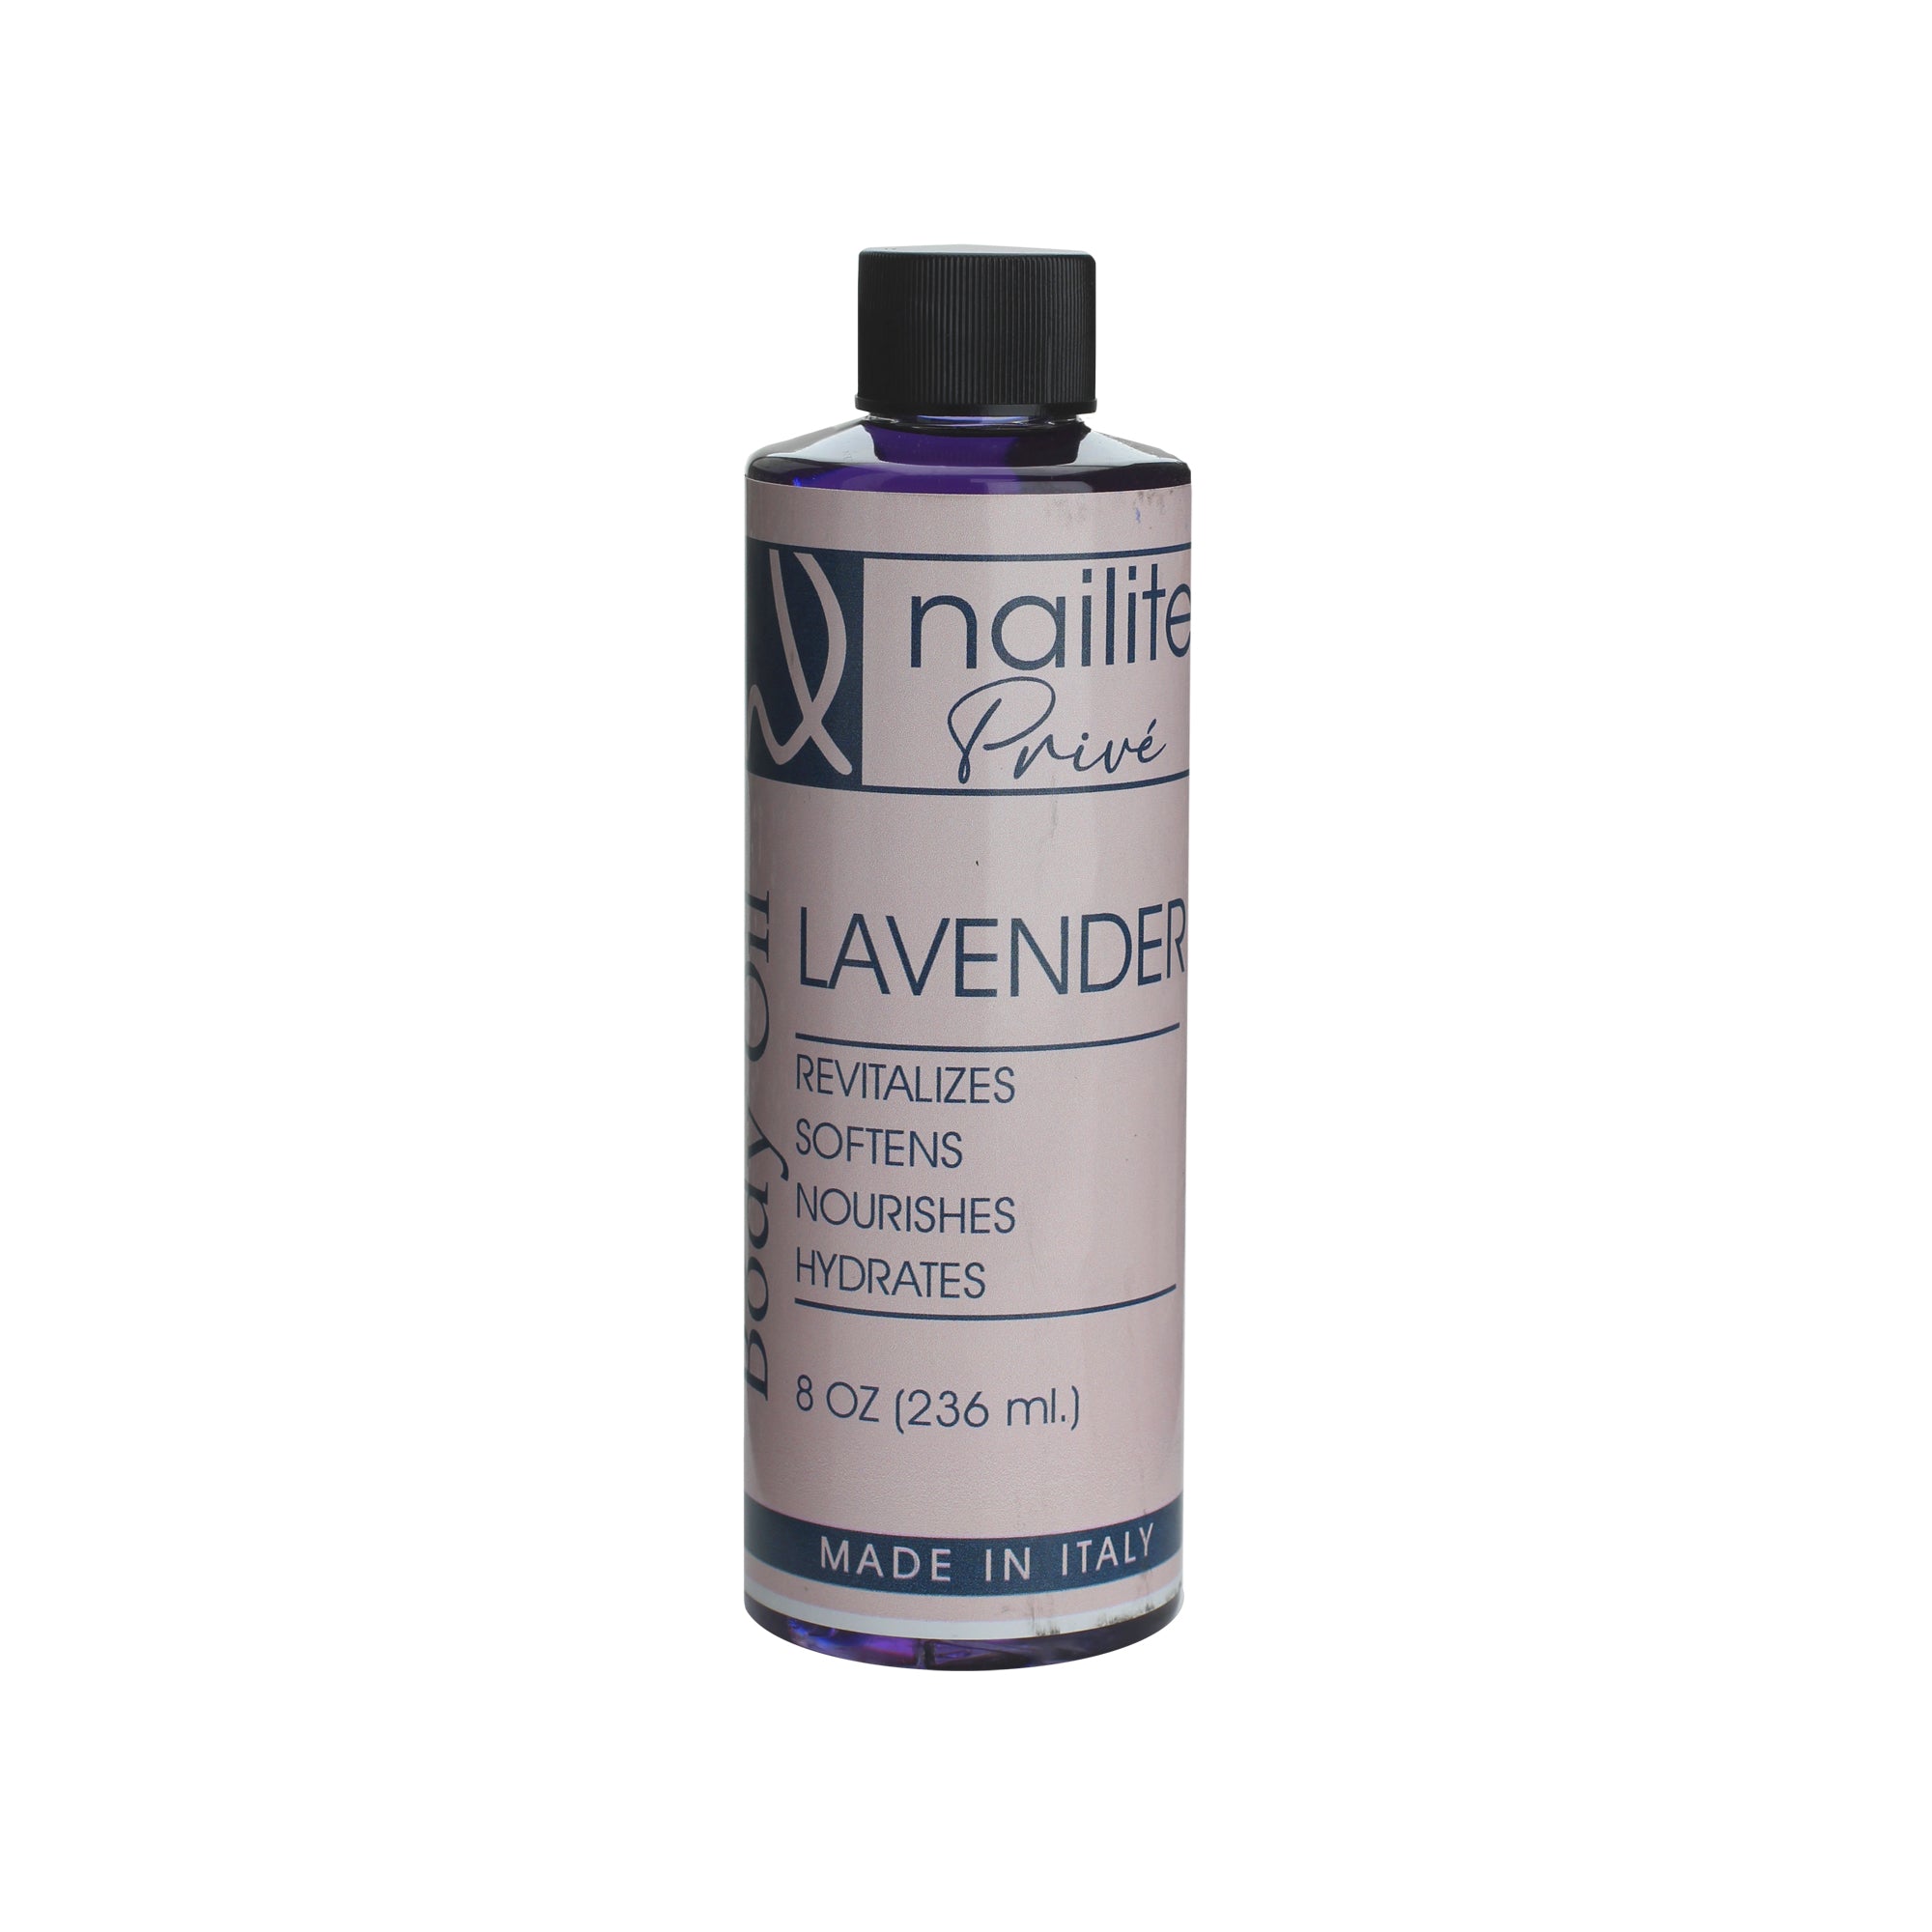 Nailite Prive Body Oil (Lavender)